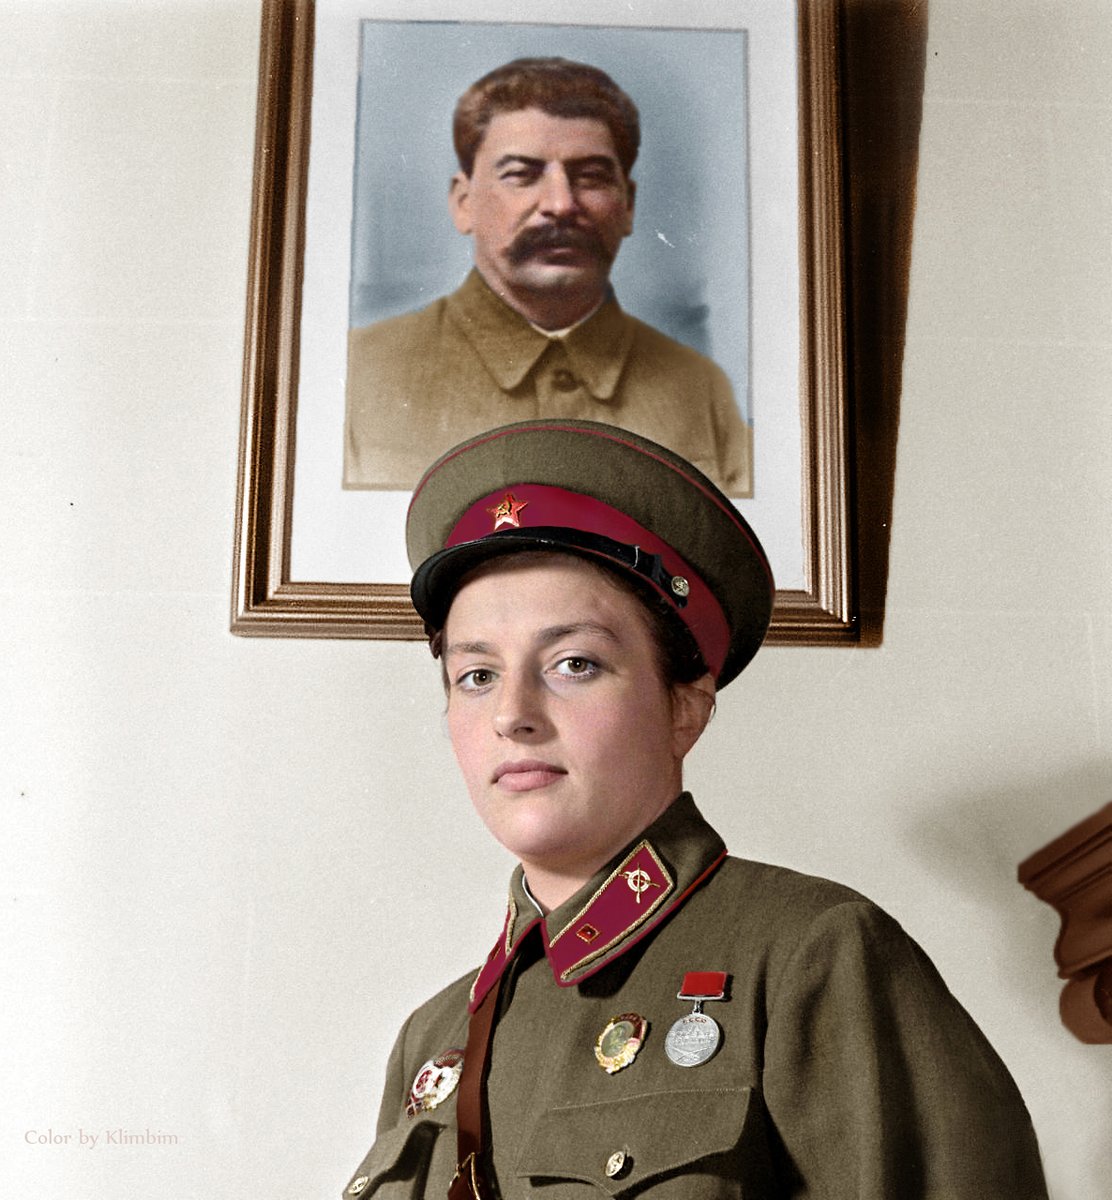 Após a guerra, Lyudmila concluiu seus estudos na Universidade de Kiev, tornando-se historiadora. Serviu como assistente de pesquisas no Quartel-General da Marinha e ingressou no Comitê Soviético dos Veteranos de Guerra. Faleceu em Moscou, em 10 de outubro de 1974.10/12